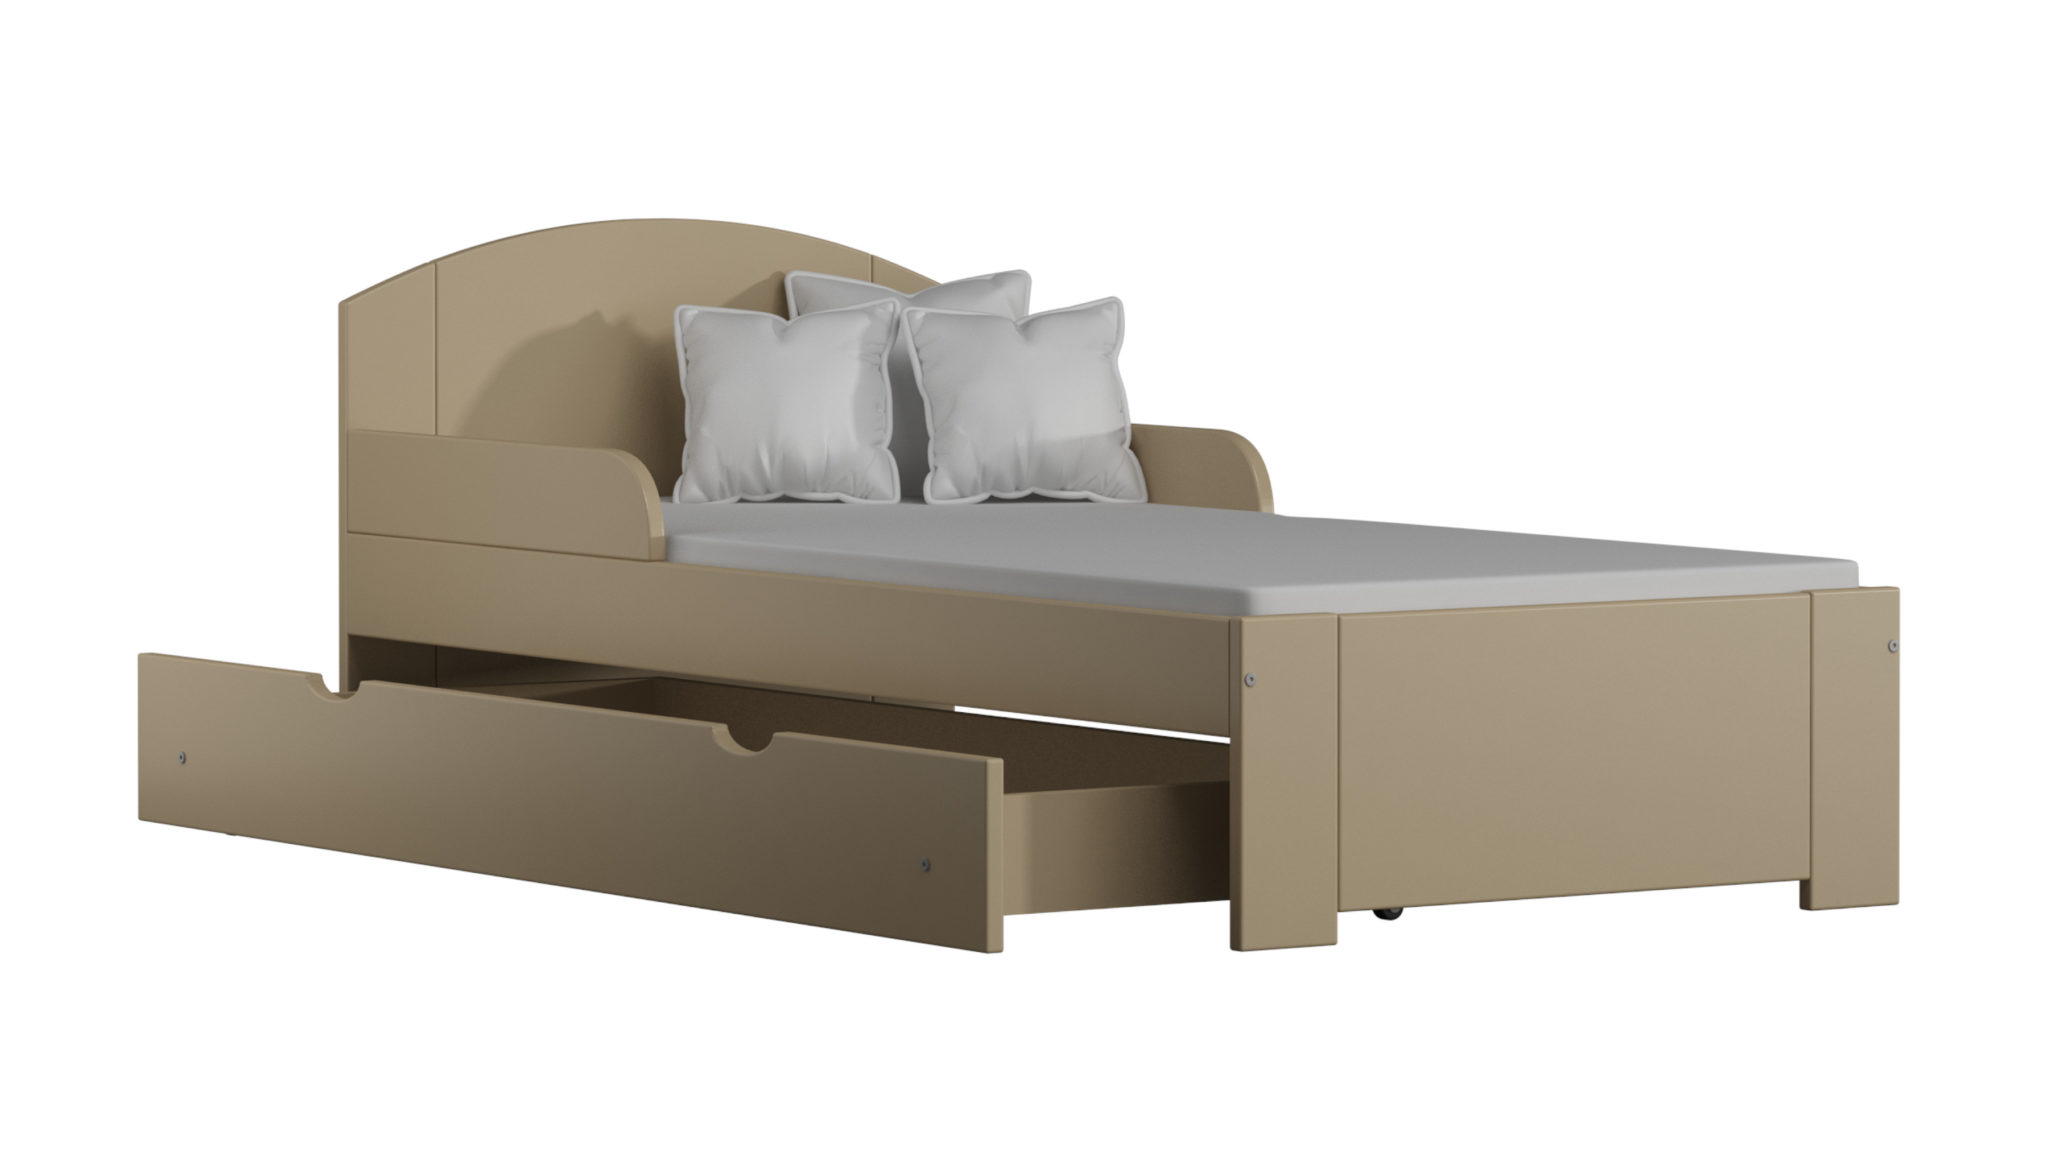 Detská posteľ Bili S 160x70 10 farebných variantov !!!